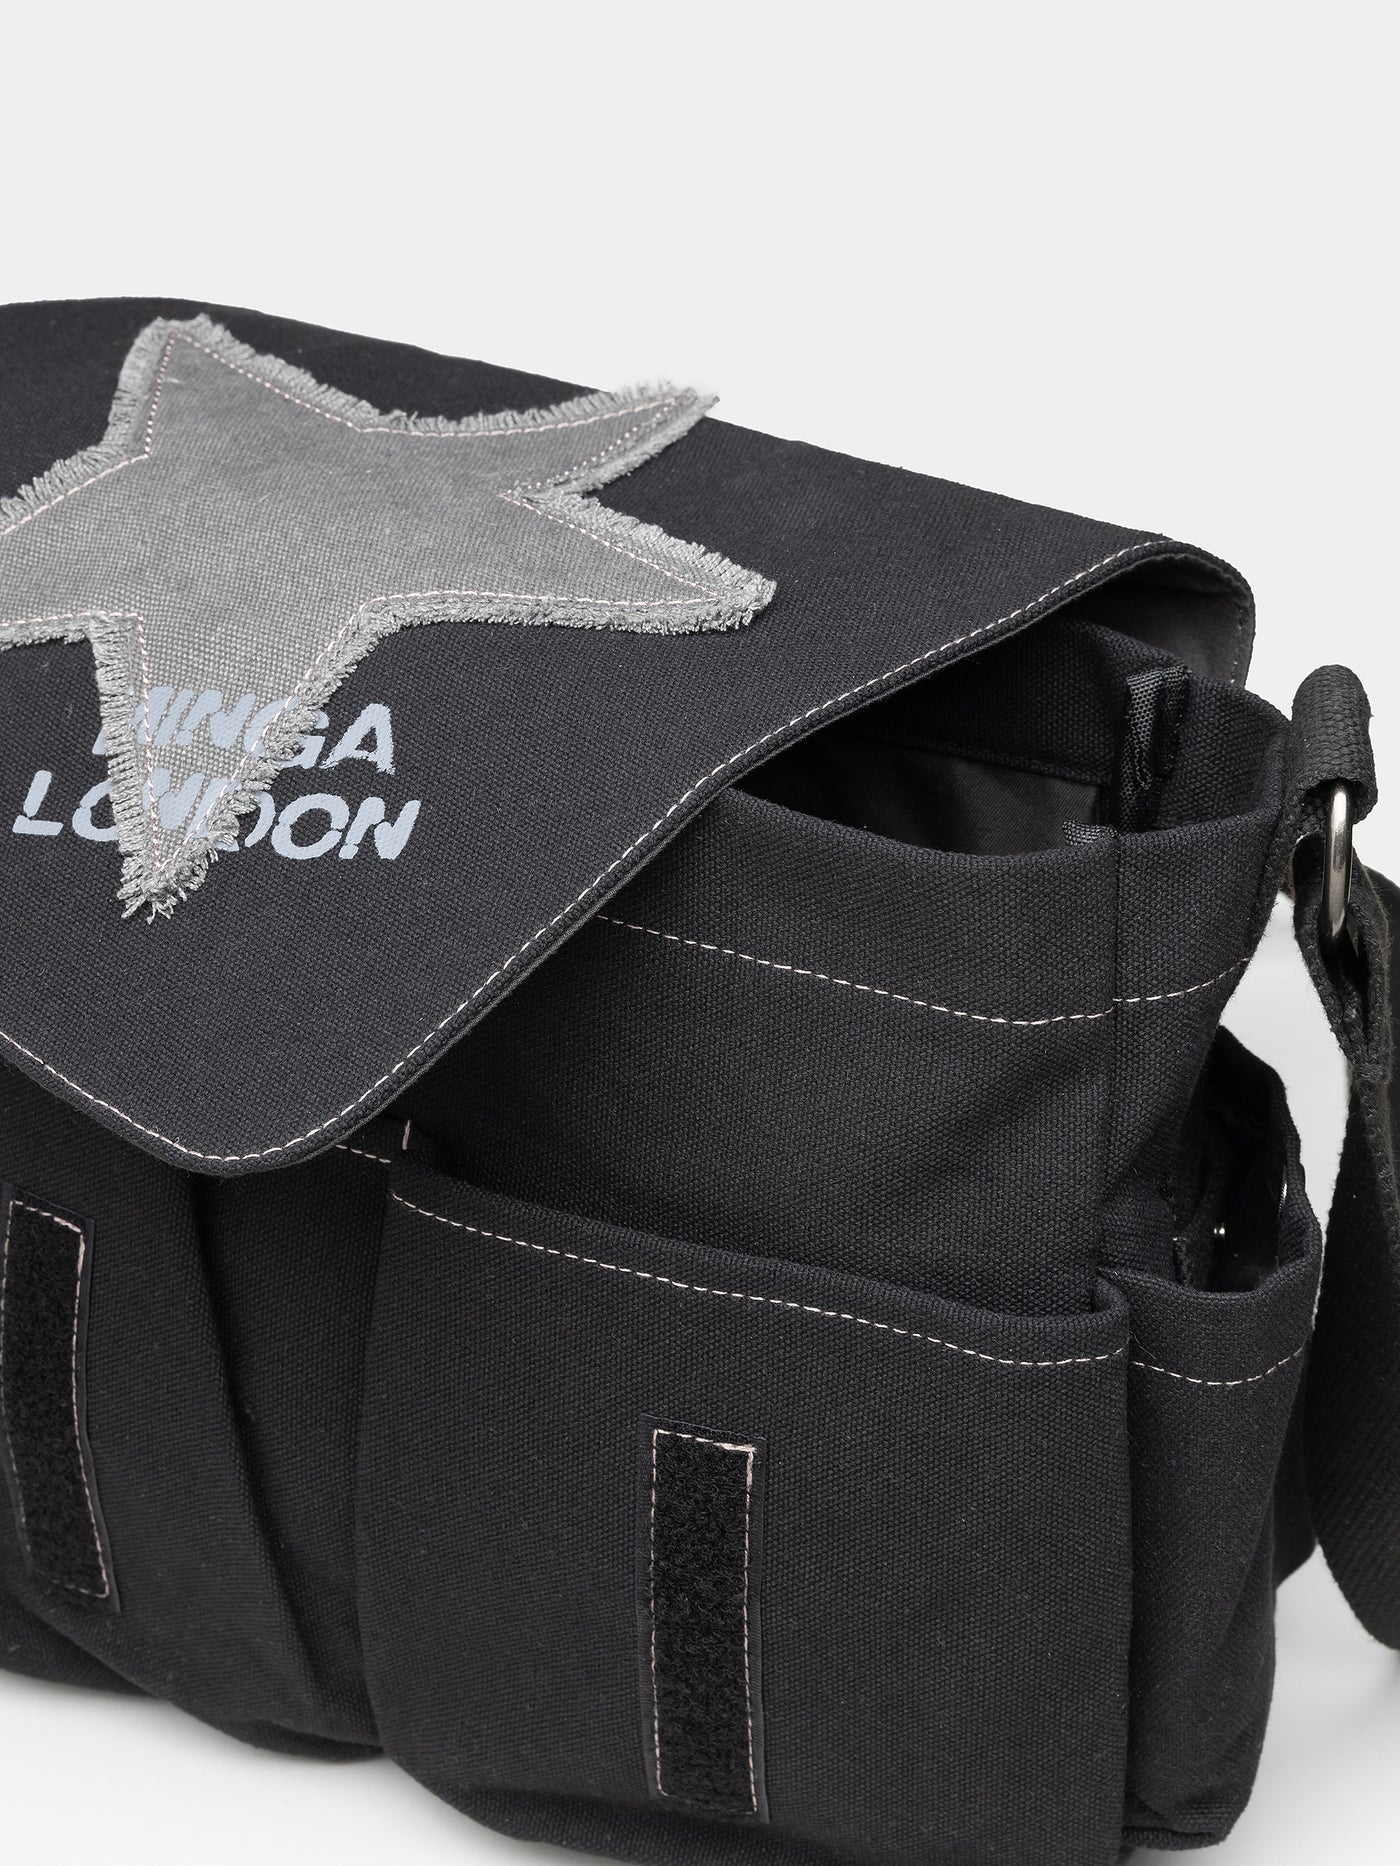 Super Star Black Canvas Messenger Bag - Minga EU